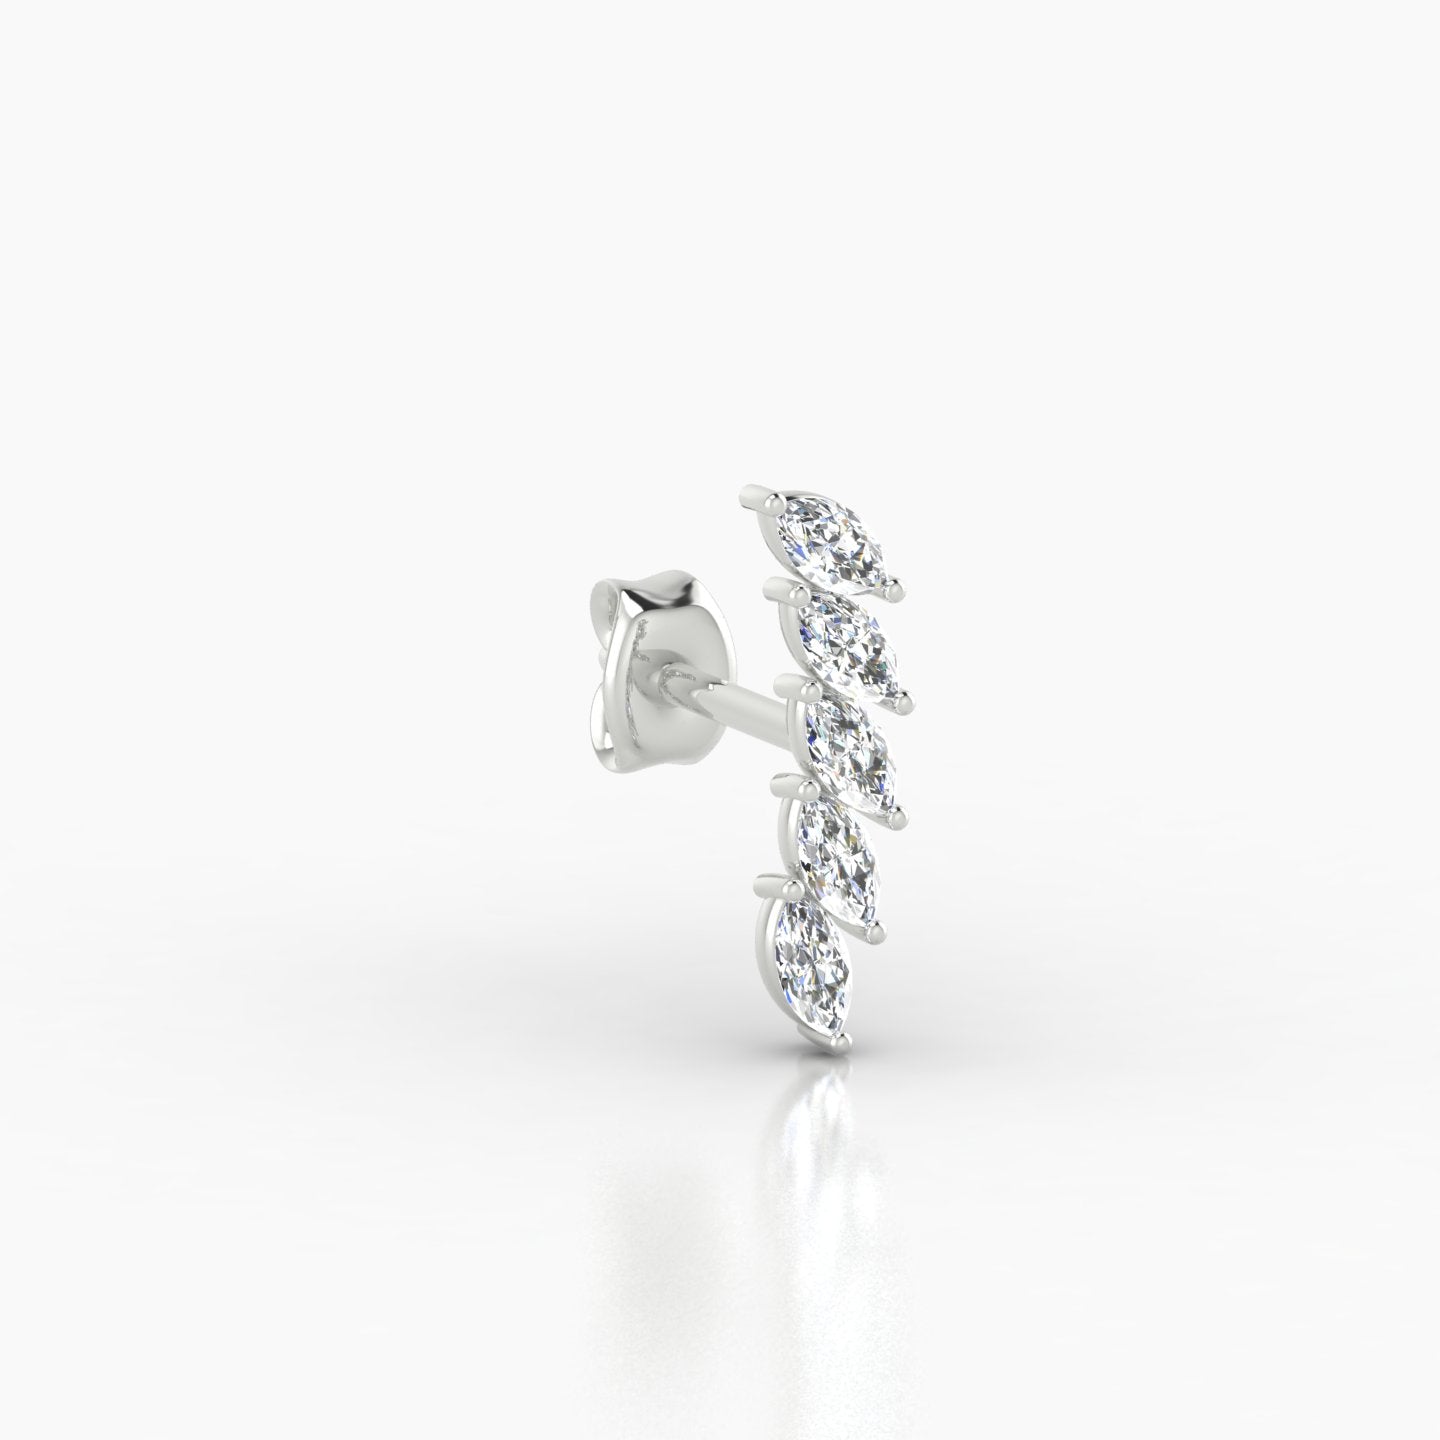 Celeste | 18k White Gold 11 mm Long Diamond Earring